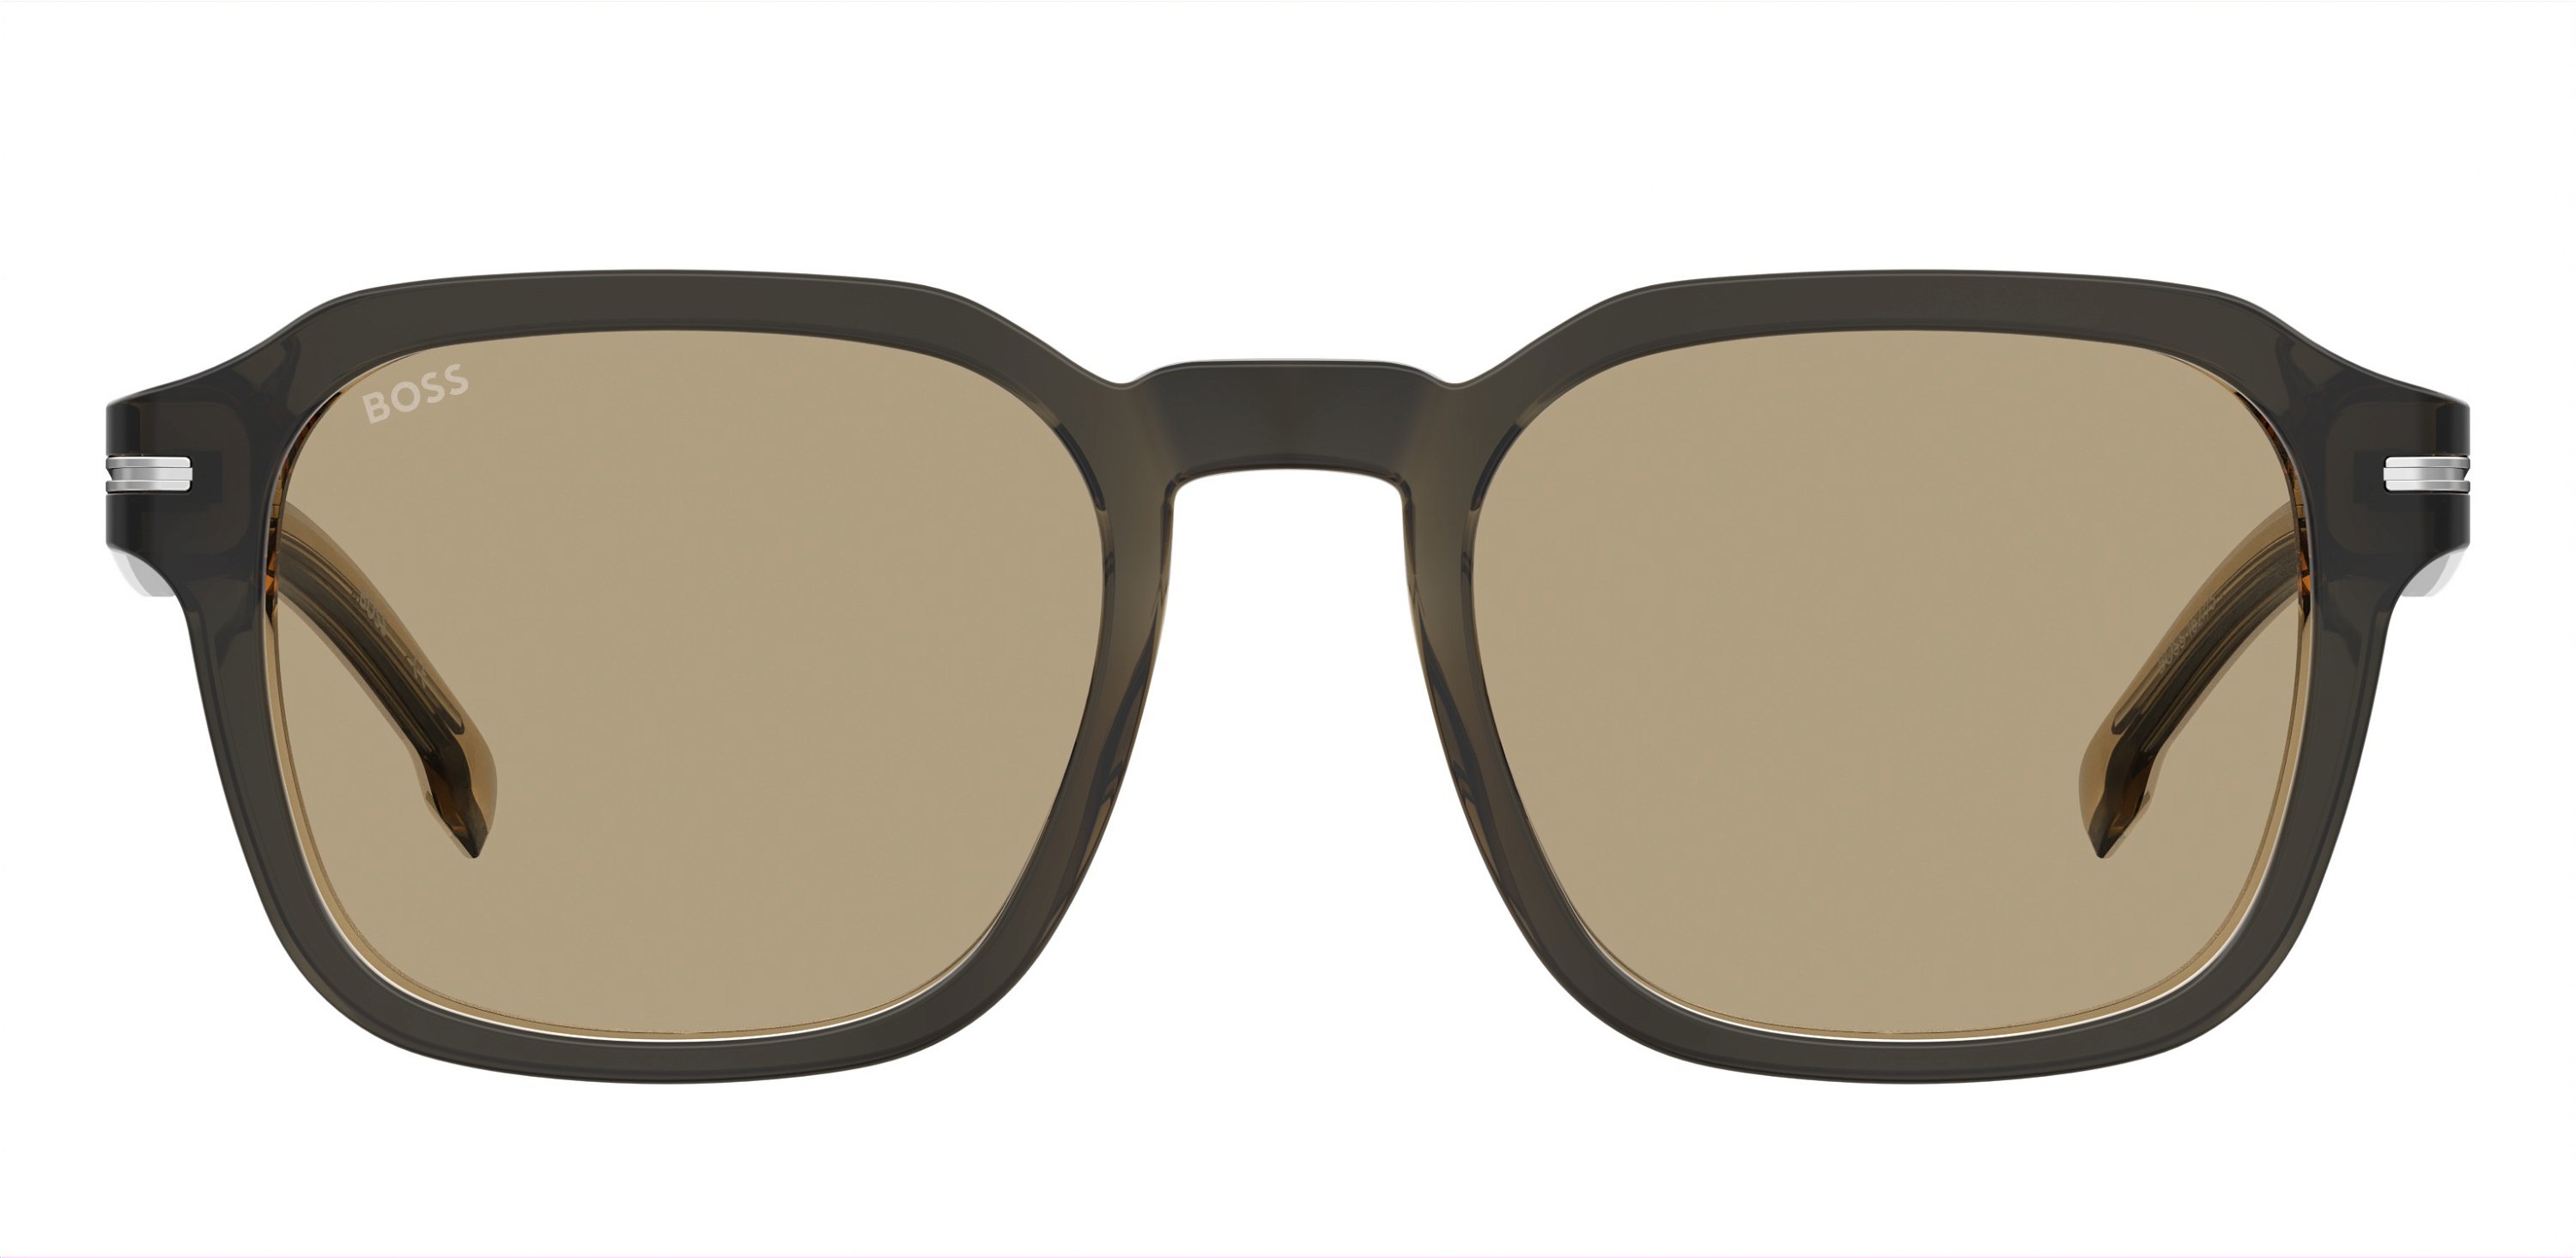 Das Bild zeigt die Sonnenbrille BOSS1627S S05 von der Marke BOSS in Grau/Braun.